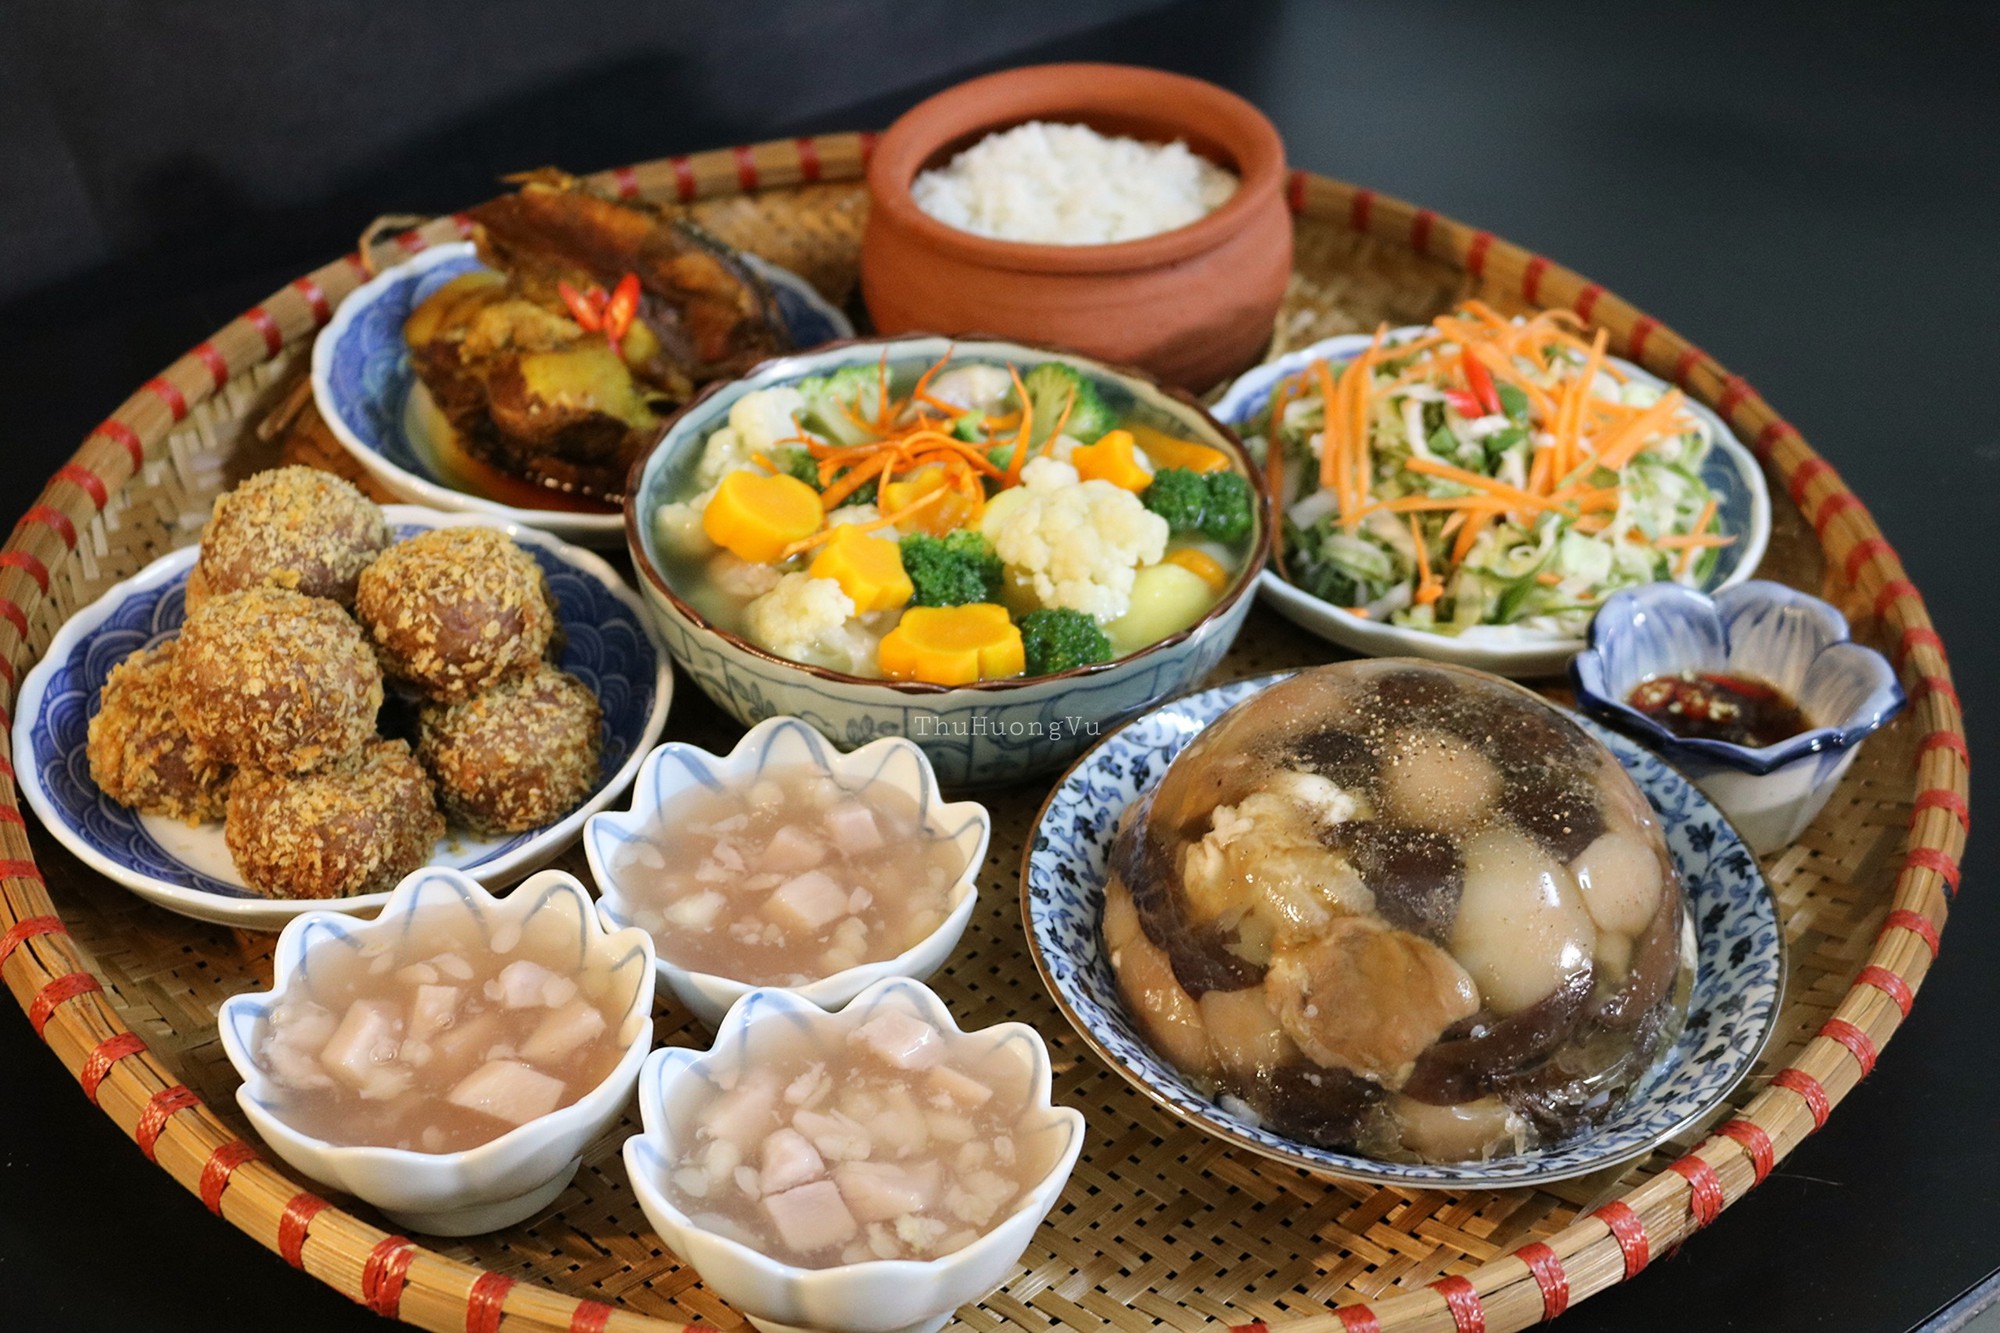 Thịt đông là một trong những món ăn đậm chất truyền thống của Tết Nguyên Đán. Được làm từ những nguyên liệu tươi ngon và được chế biến công phu, thịt đông sẽ làm say đắm lòng người thưởng thức. Hãy cùng xem bức ảnh thịt đông đầy hấp dẫn này và tận hưởng một trải nghiệm ẩm thực đặc sắc nhất của người Việt!